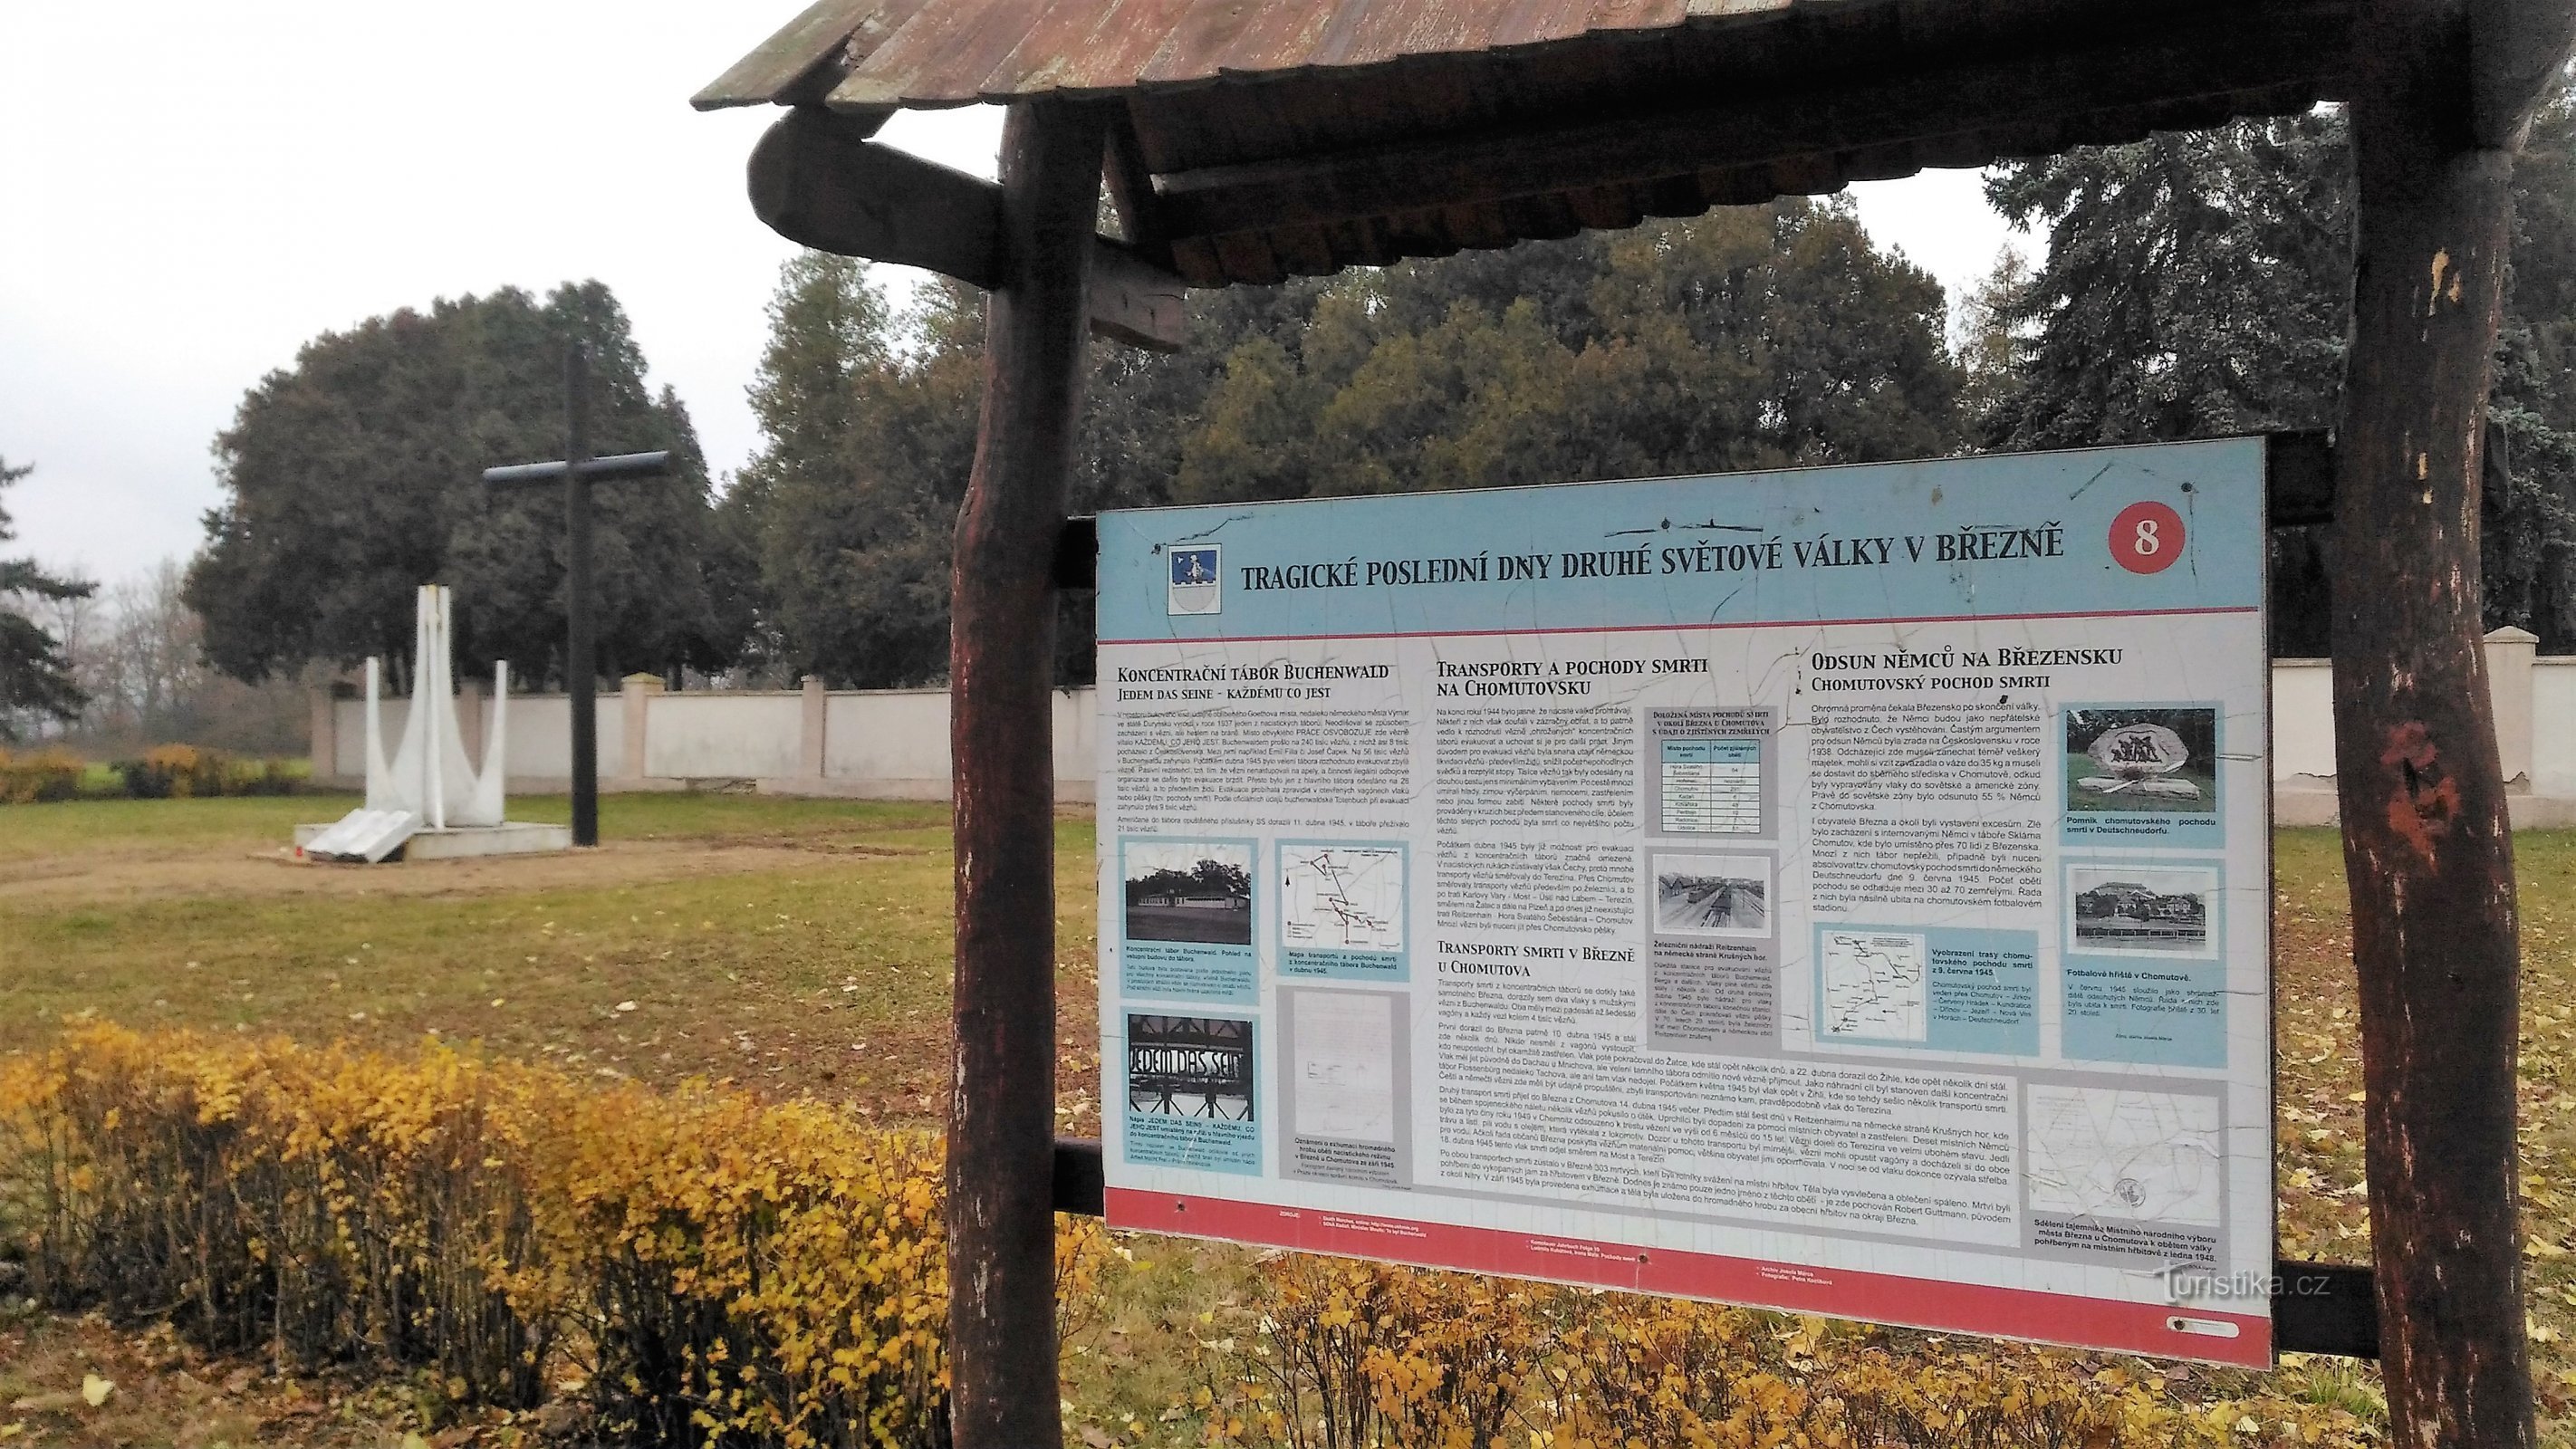 乔穆托夫附近布热兹诺的死亡运输遇难者纪念碑。